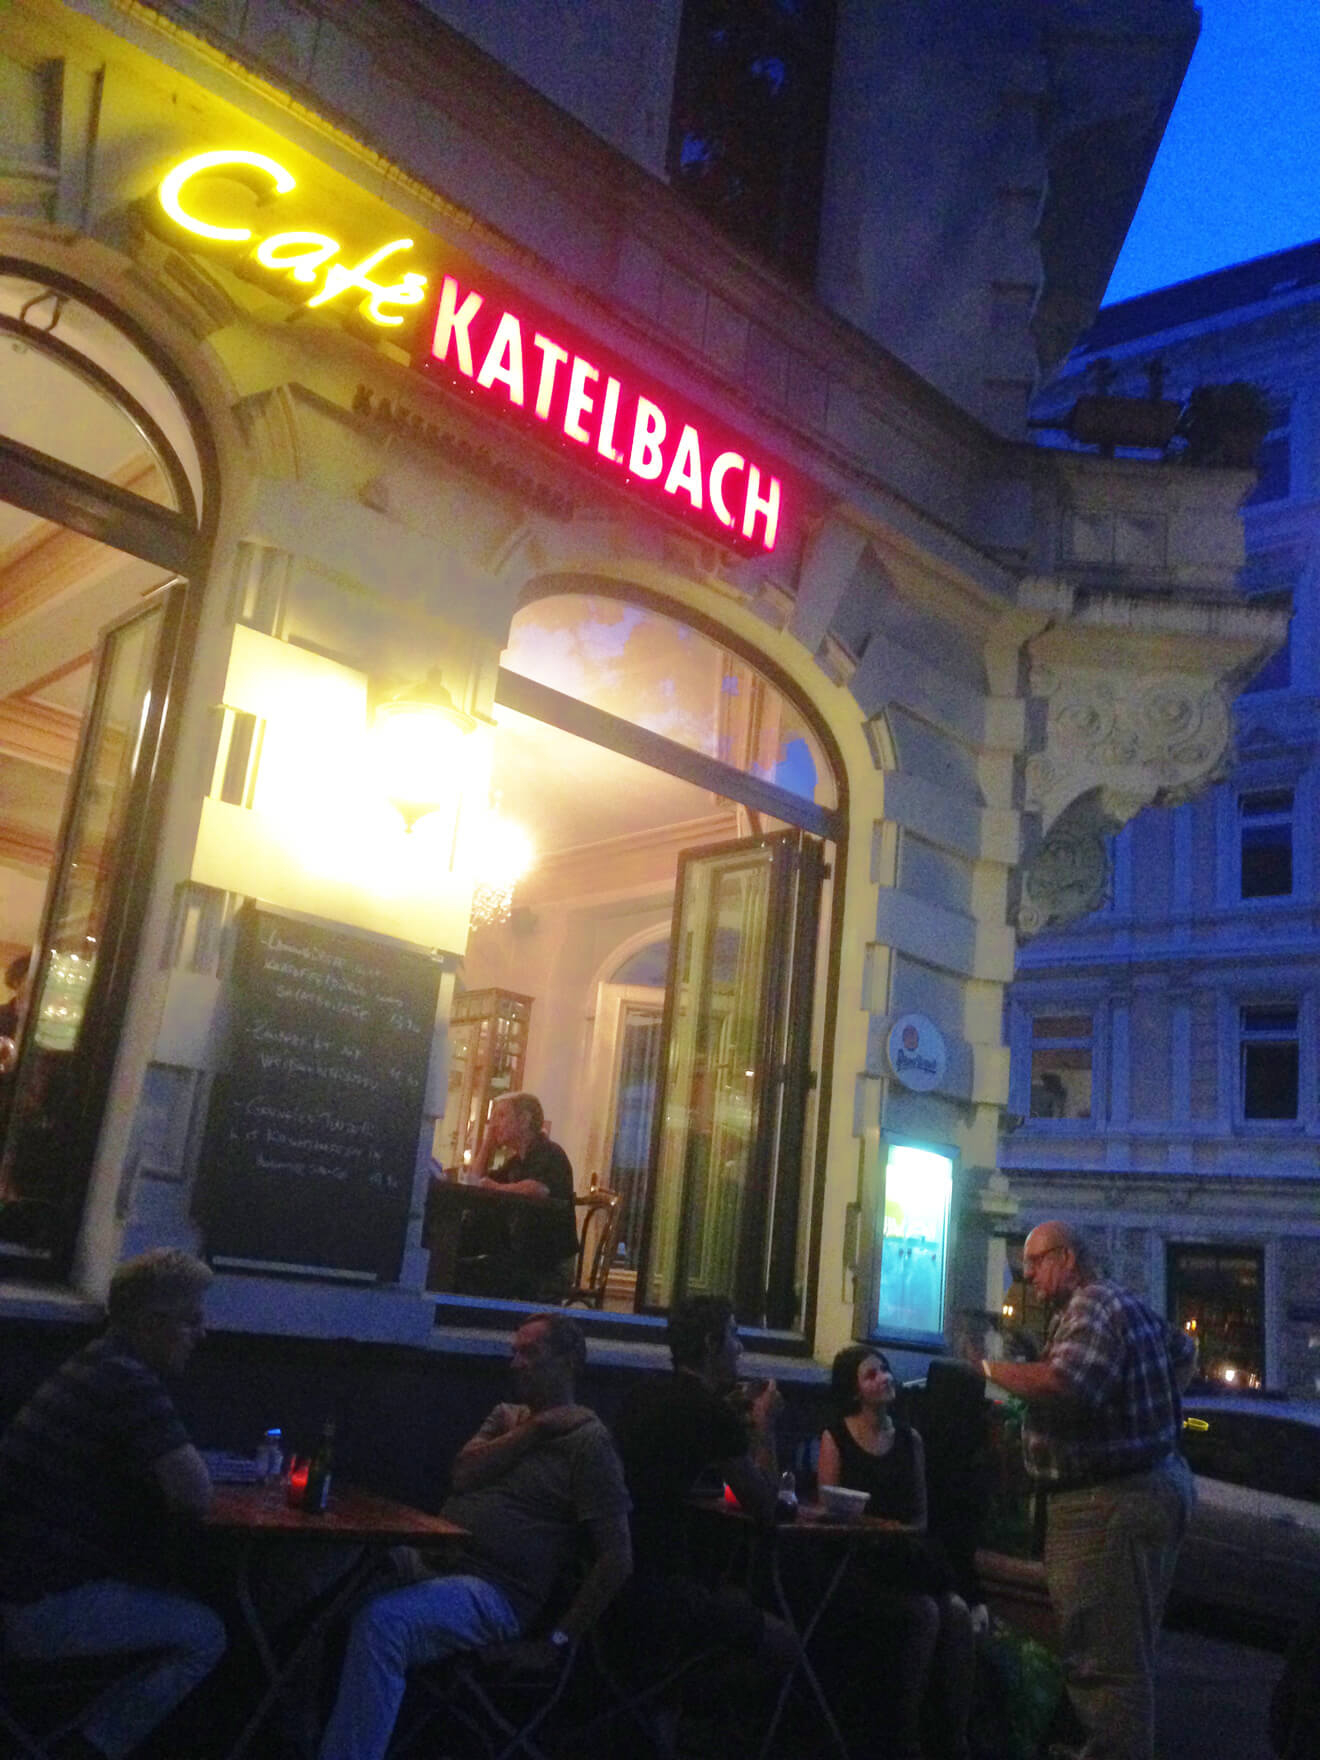 Fachada del café Katelbach